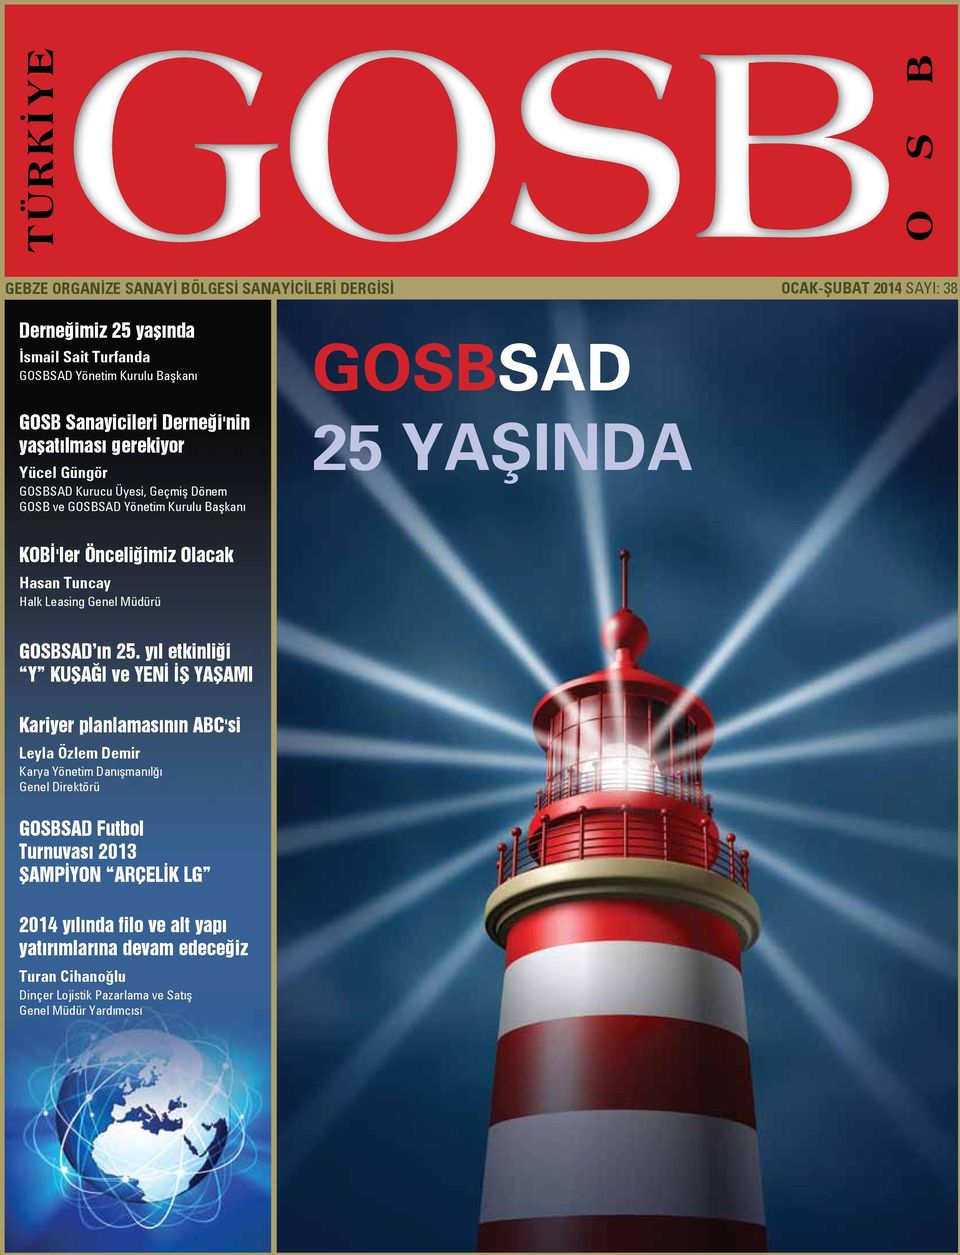 Olacak Hasan Tuncay Halk Leasing Genel Müdürü GOSBSAD ın 25.